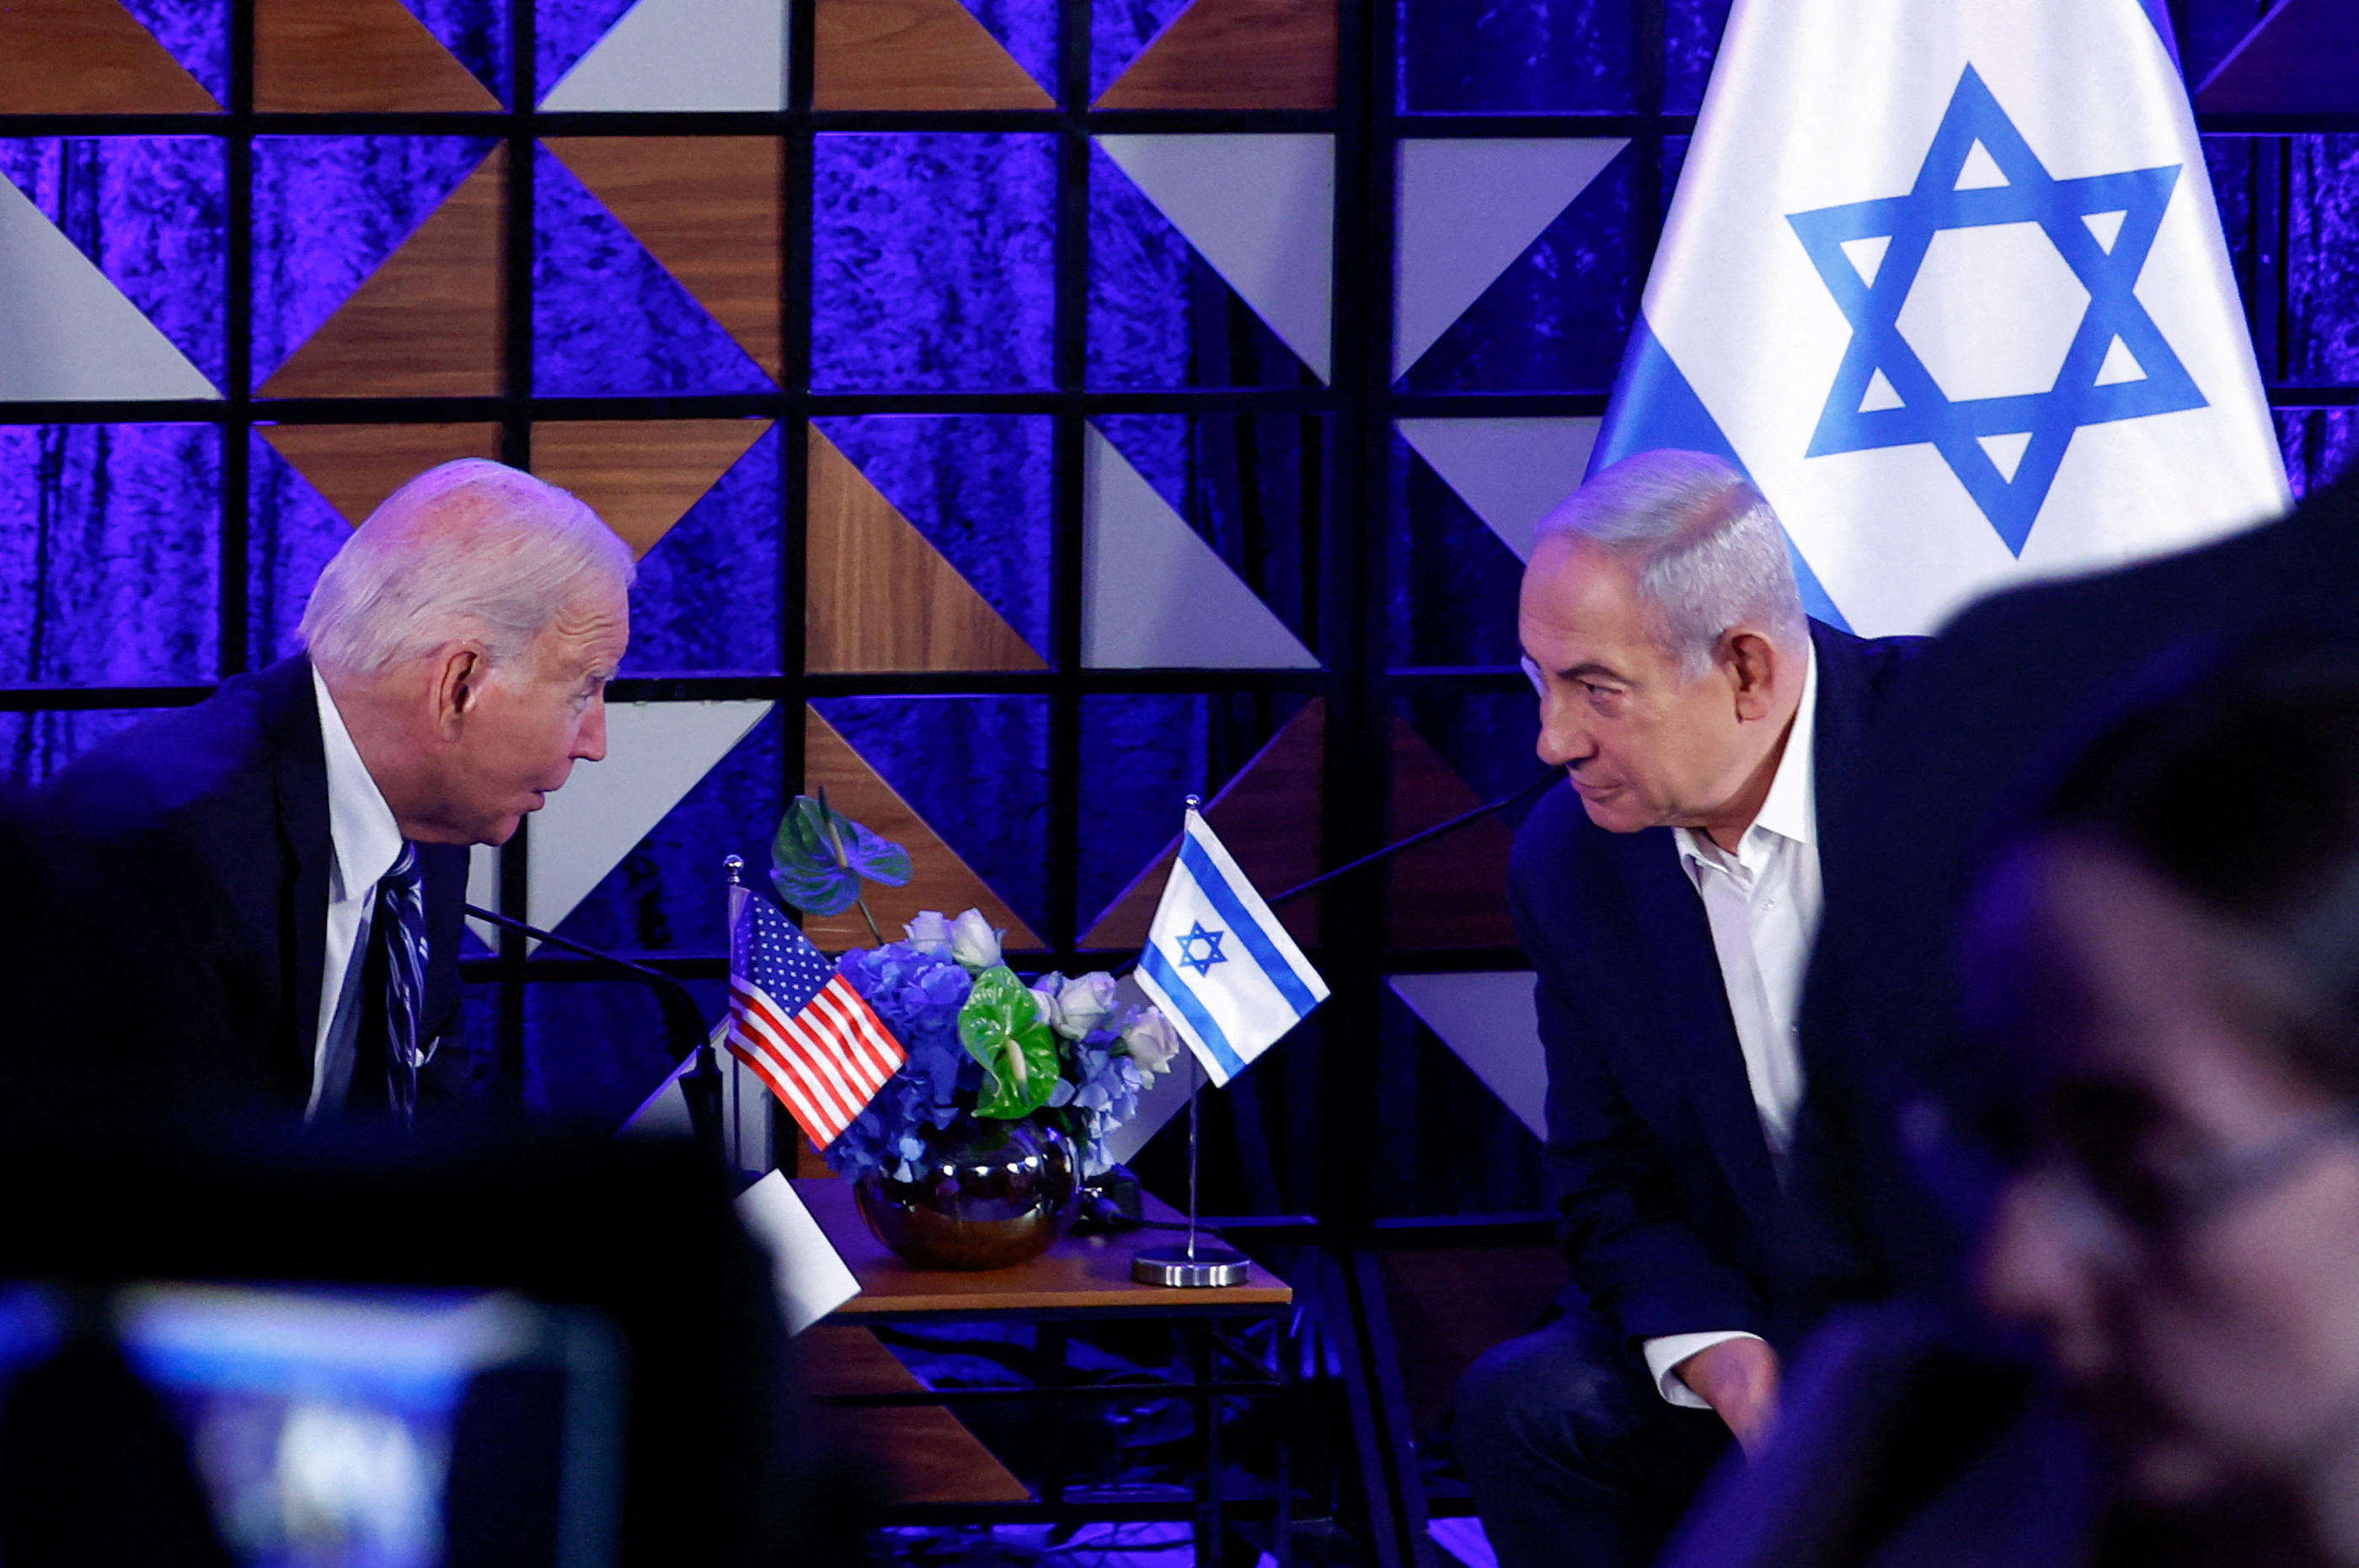 Joe Biden martèle depuis plusieurs semaines son opposition à une offensive israélienne à Rafah, à laquelle Benyamin Netanyahou ne semble pas prêt à renoncer. (Illustration) Reuters/Evelyn Hockstein